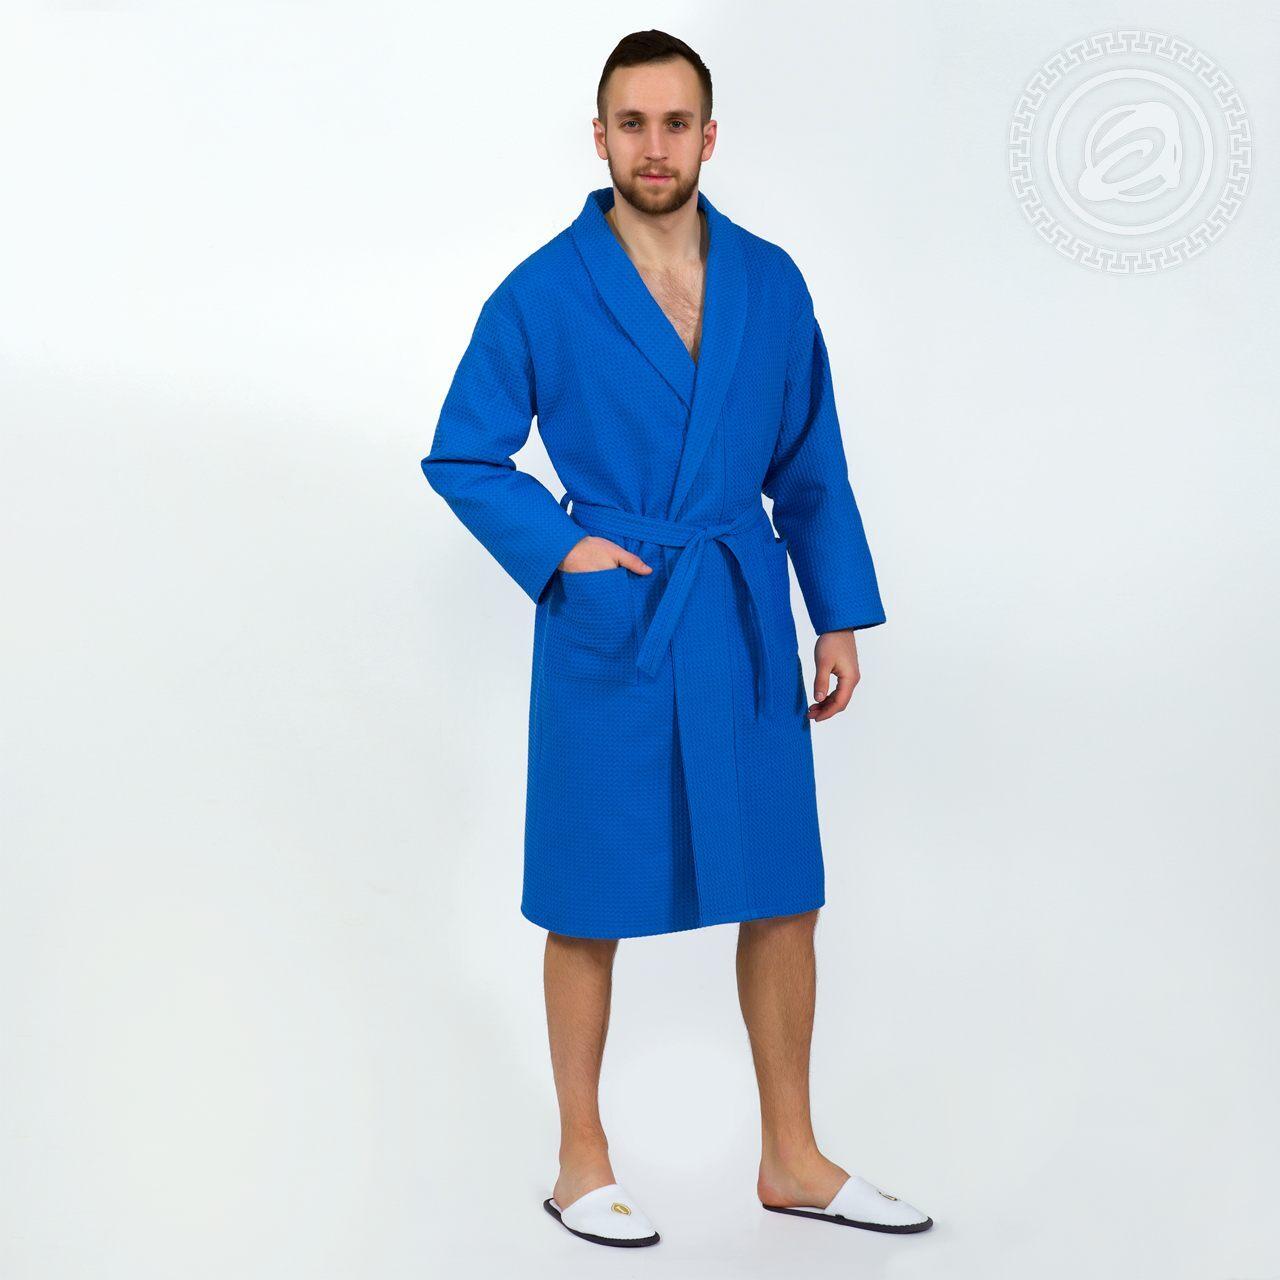 DOMTEKC Халат банный мужской с капюшоном, синий , размер L/XL